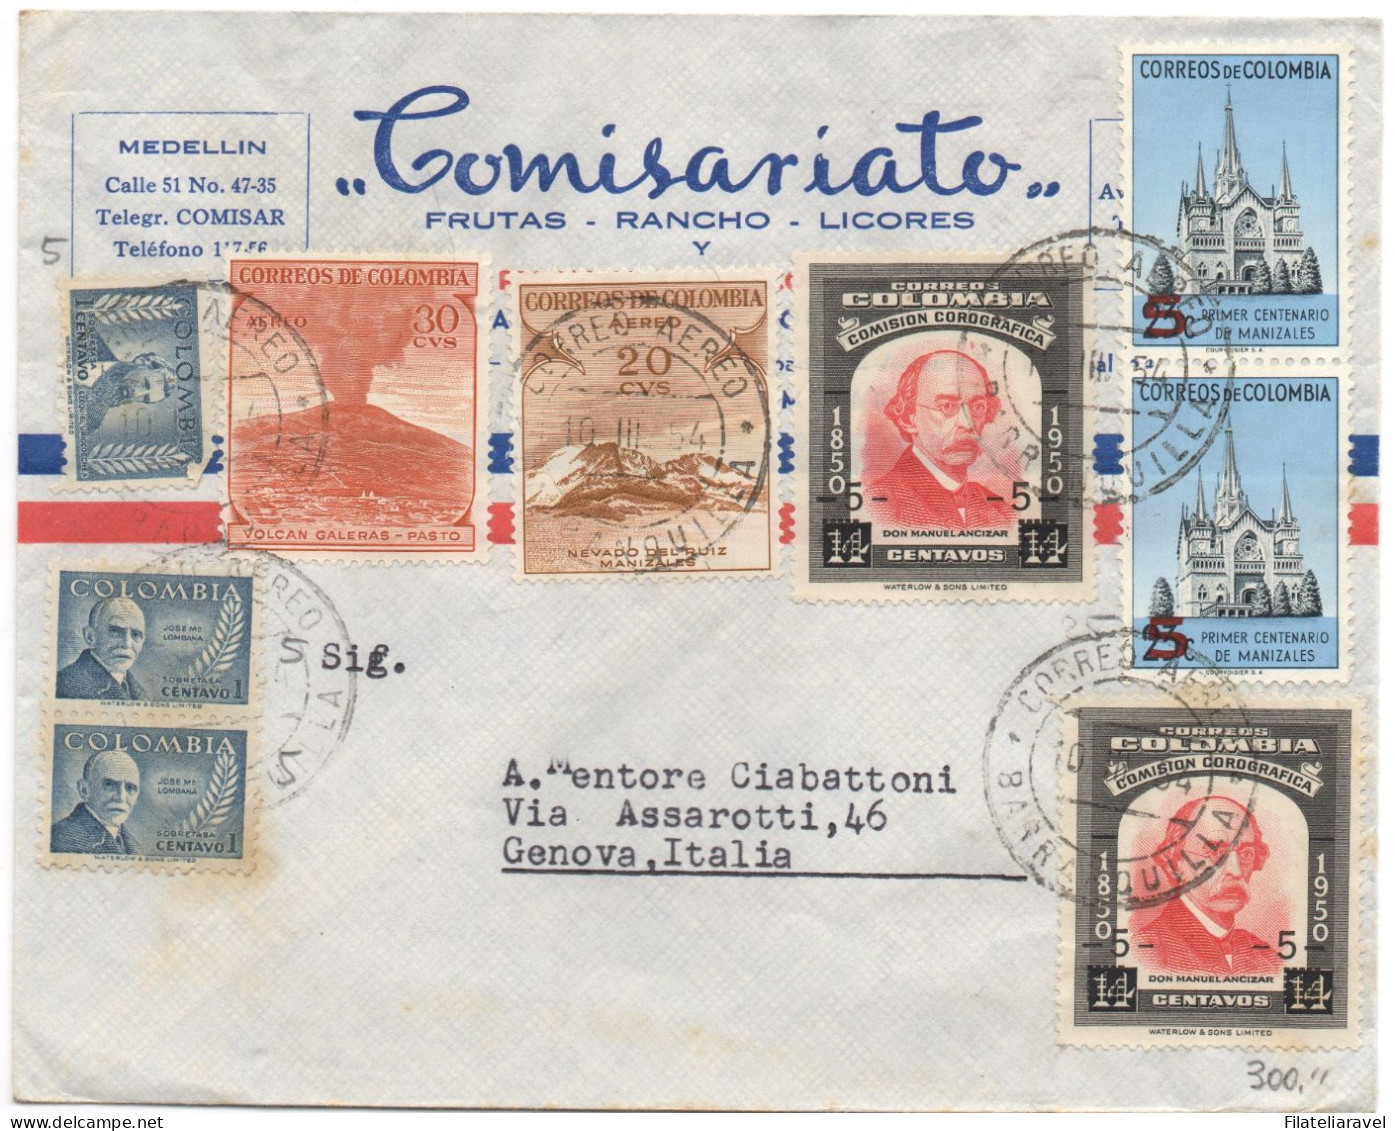 COLUMBIA  - Piccolo lotto di  17  lettere di posta aerea. Tutte viaggiate. Tutte diverse.